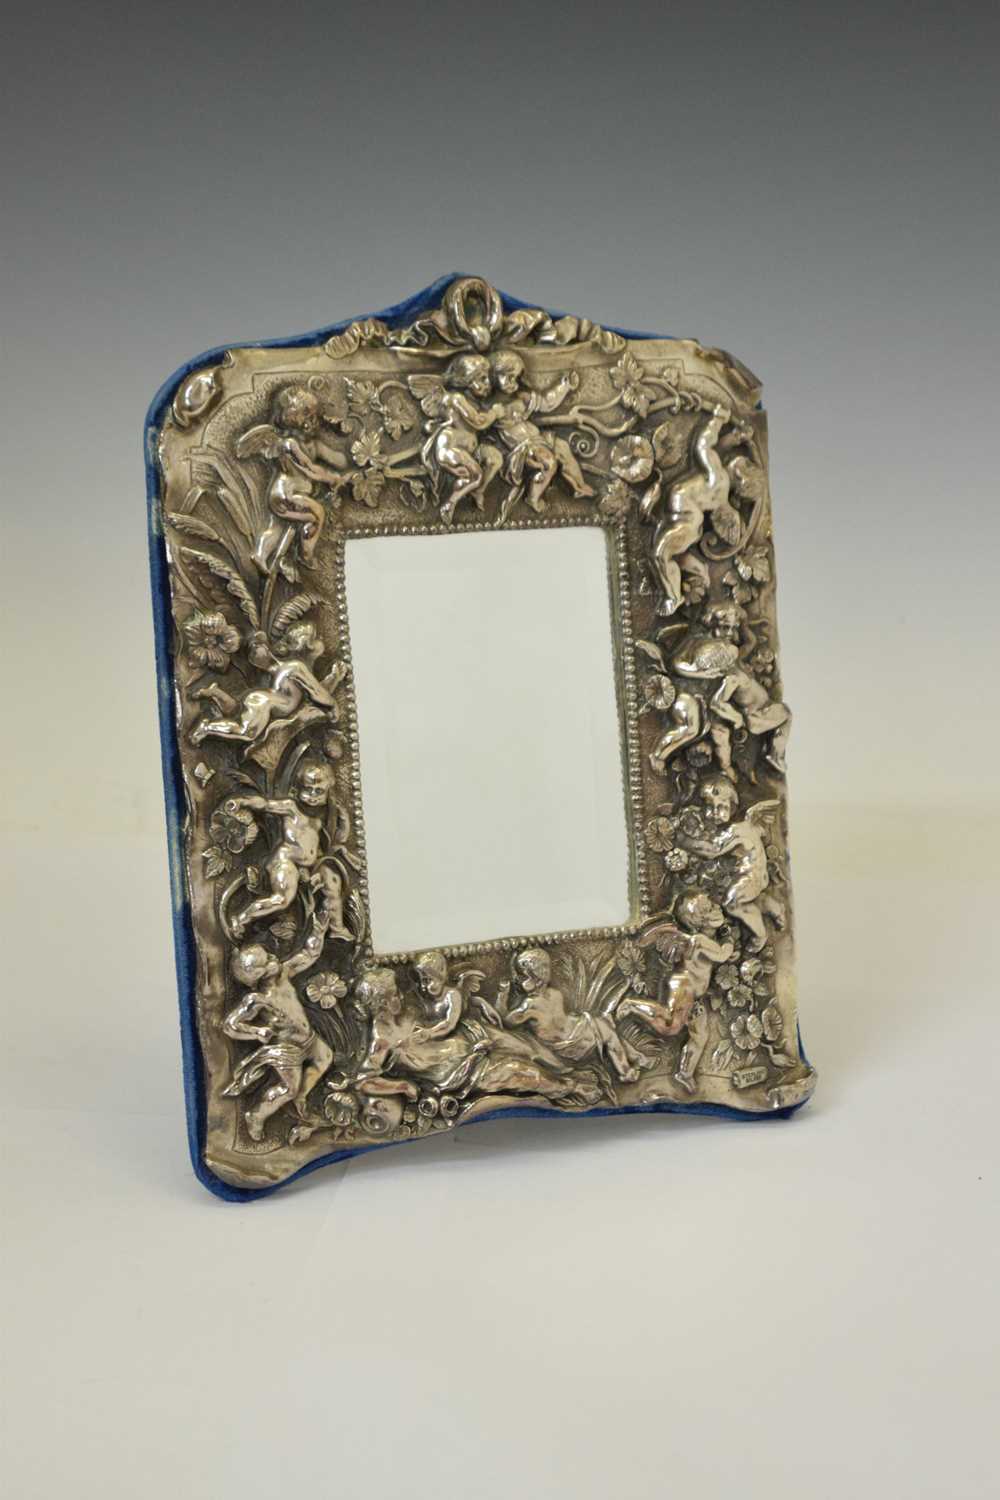 Modern white-metal mounted easel mirror - Image 2 of 7